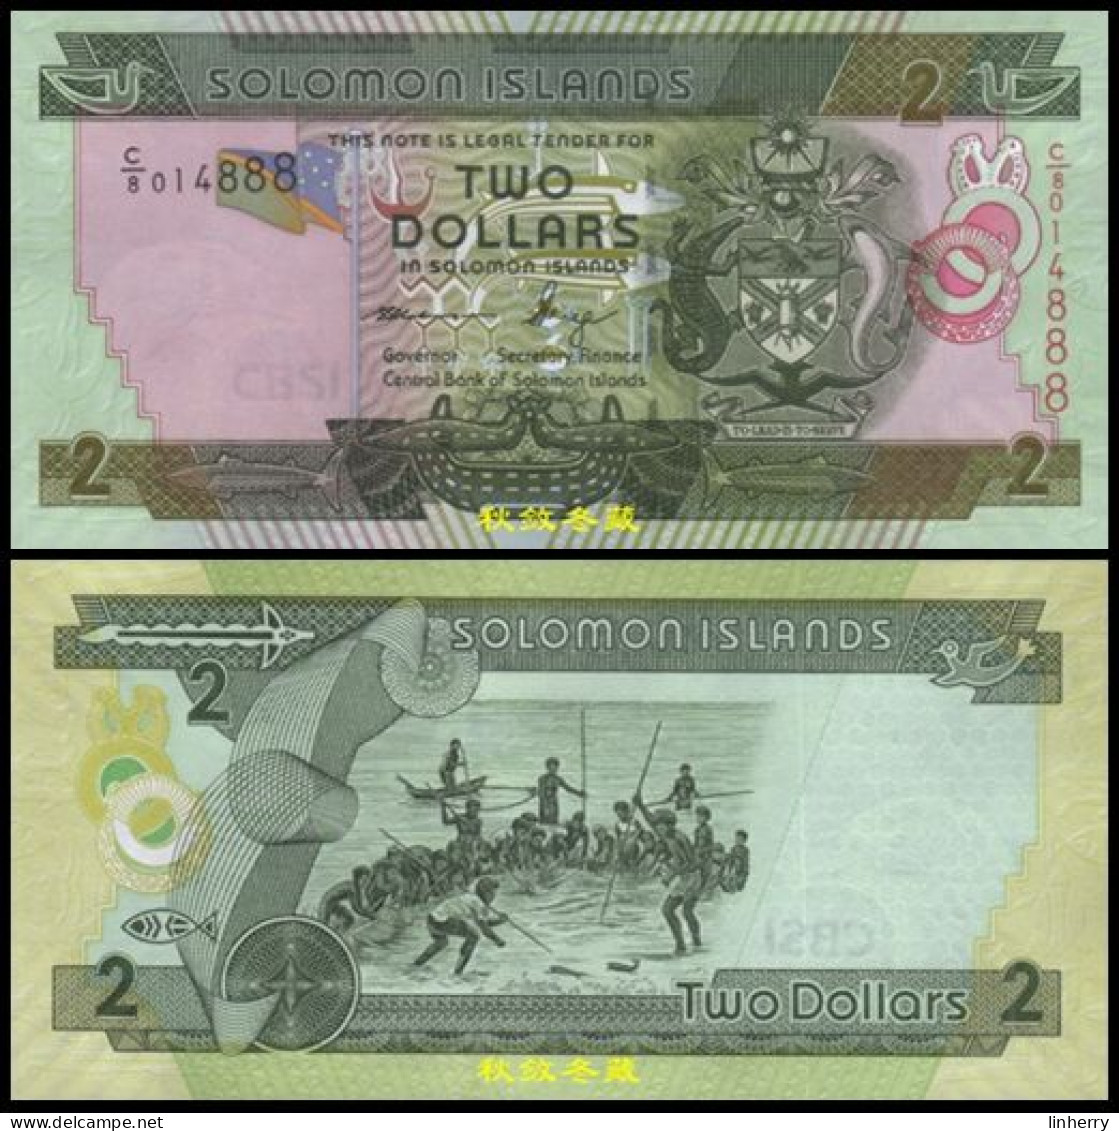 Solomon Islands 2 Dollars 2011, Paper, Lucky Number 888, UNC - Solomon Islands